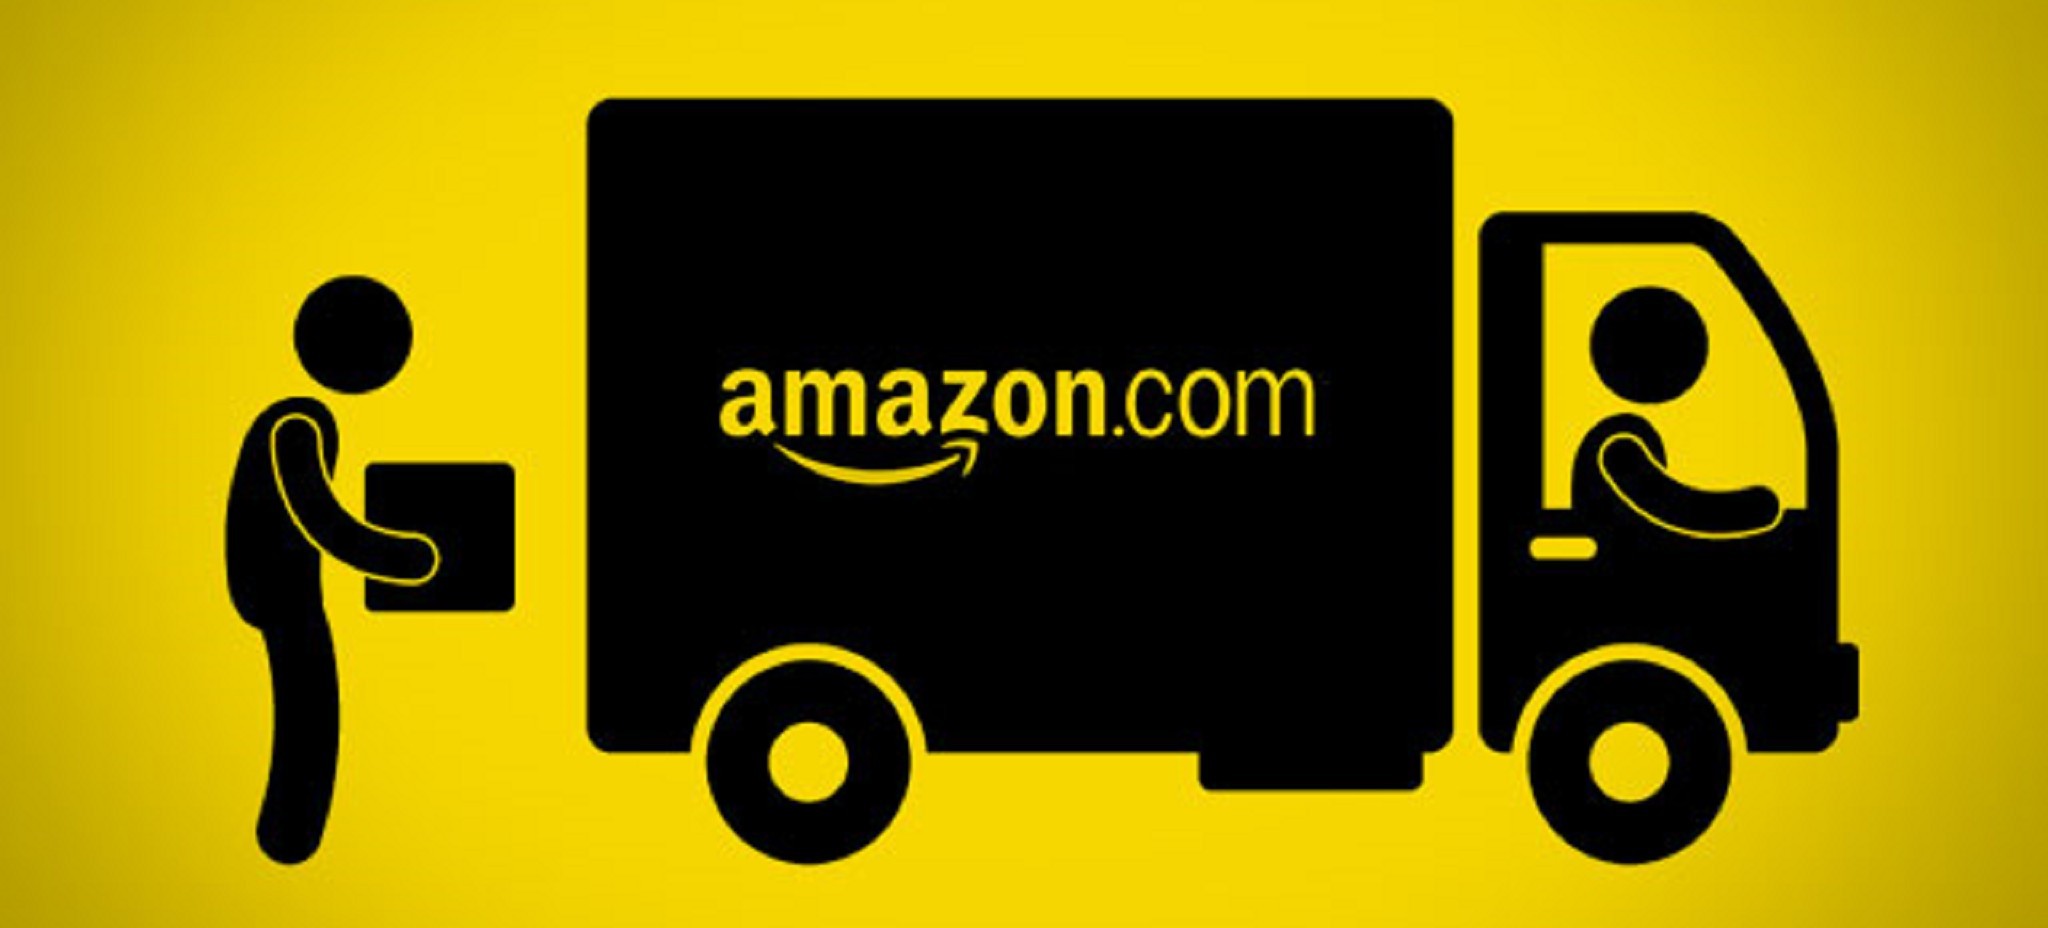 Amazon以顧客為本的商品熱賣法則